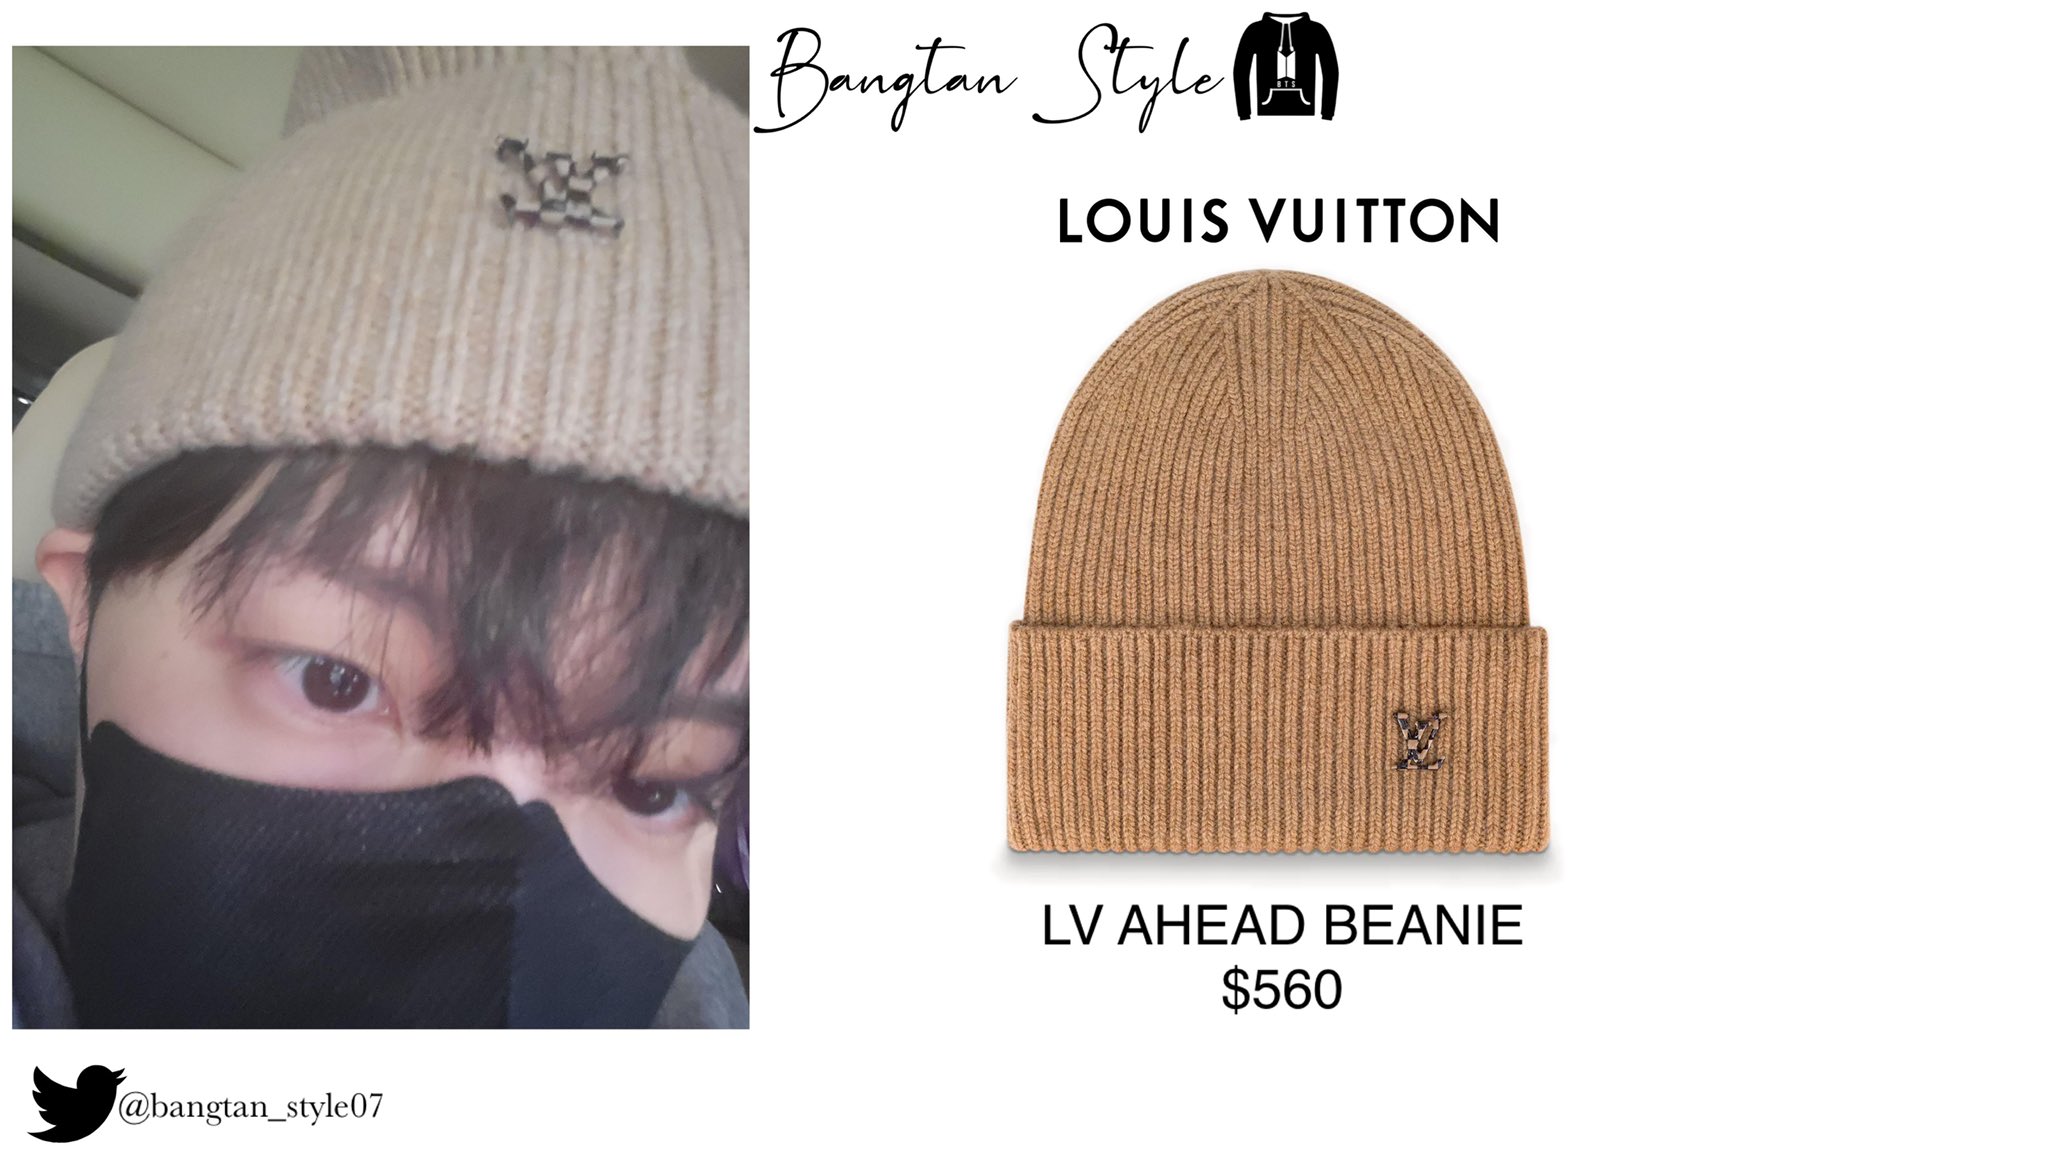 Louis Vuitton LV Ahead Beanie